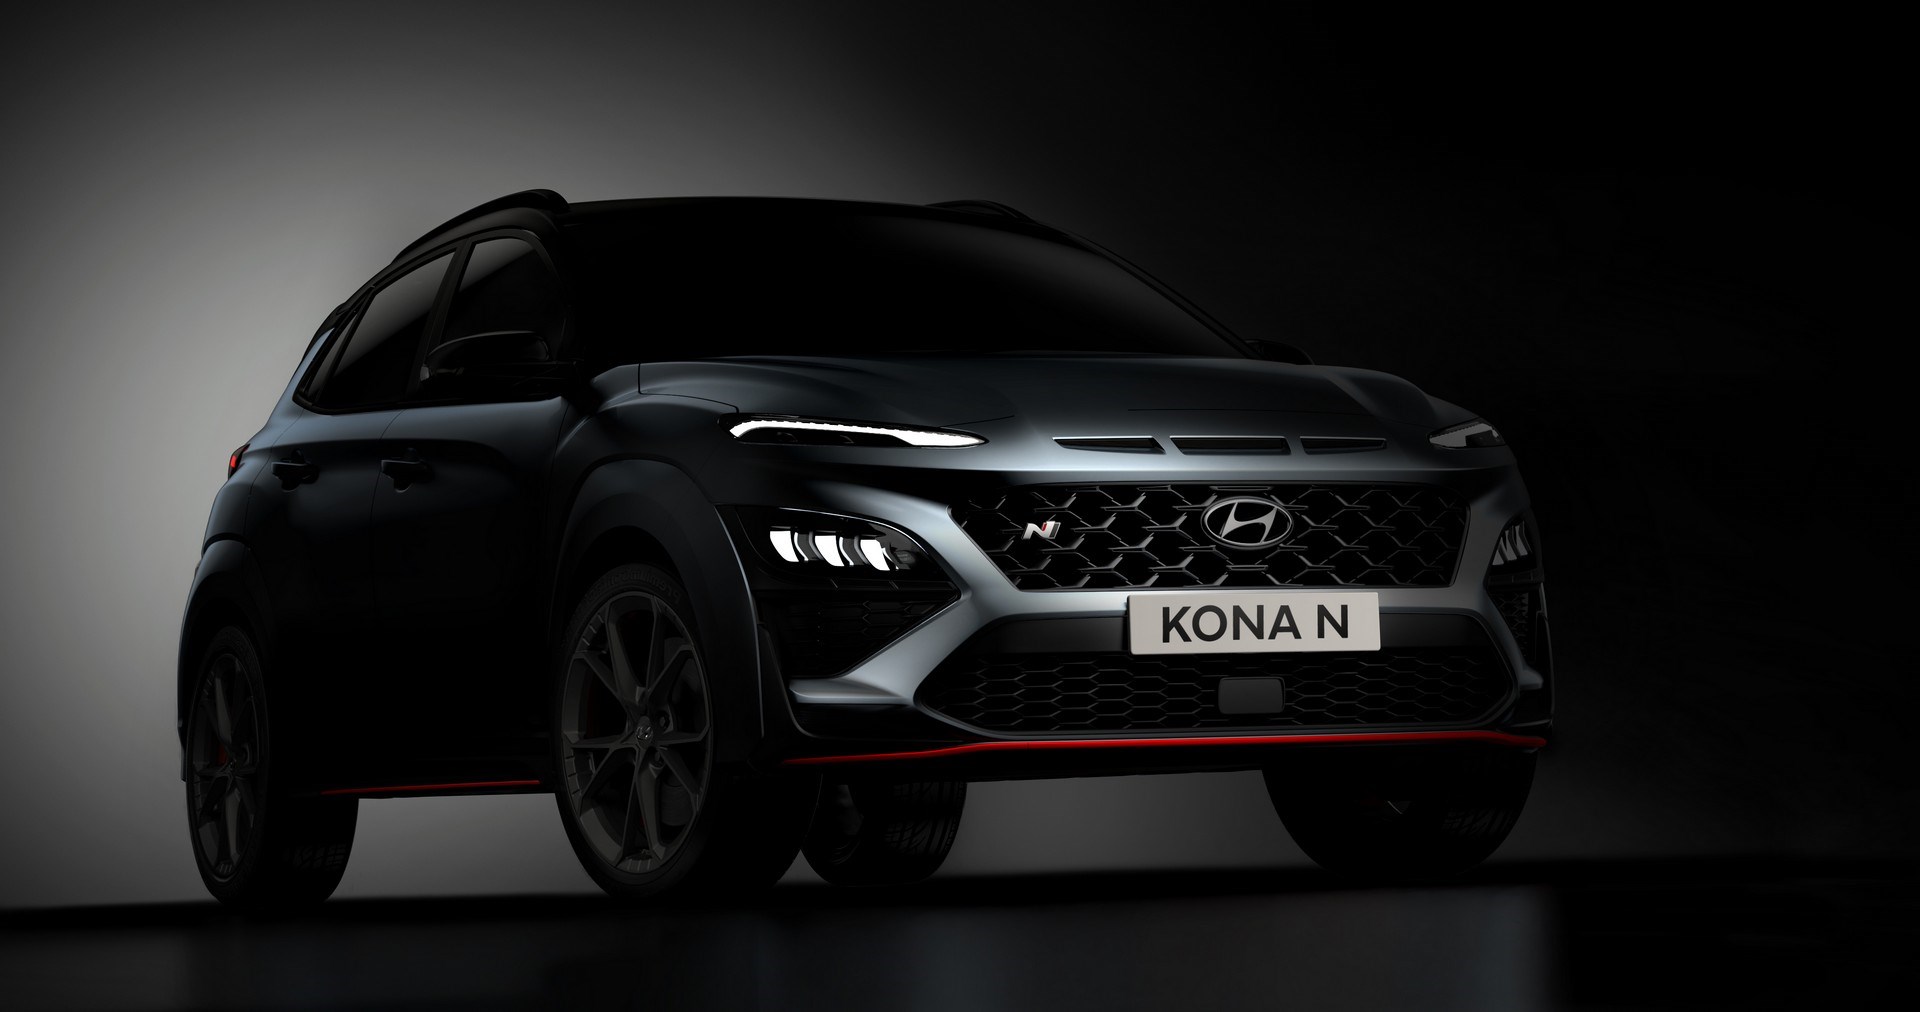 Yeni Hyundai Kona N'in gövde tasarımı ortaya çıktı